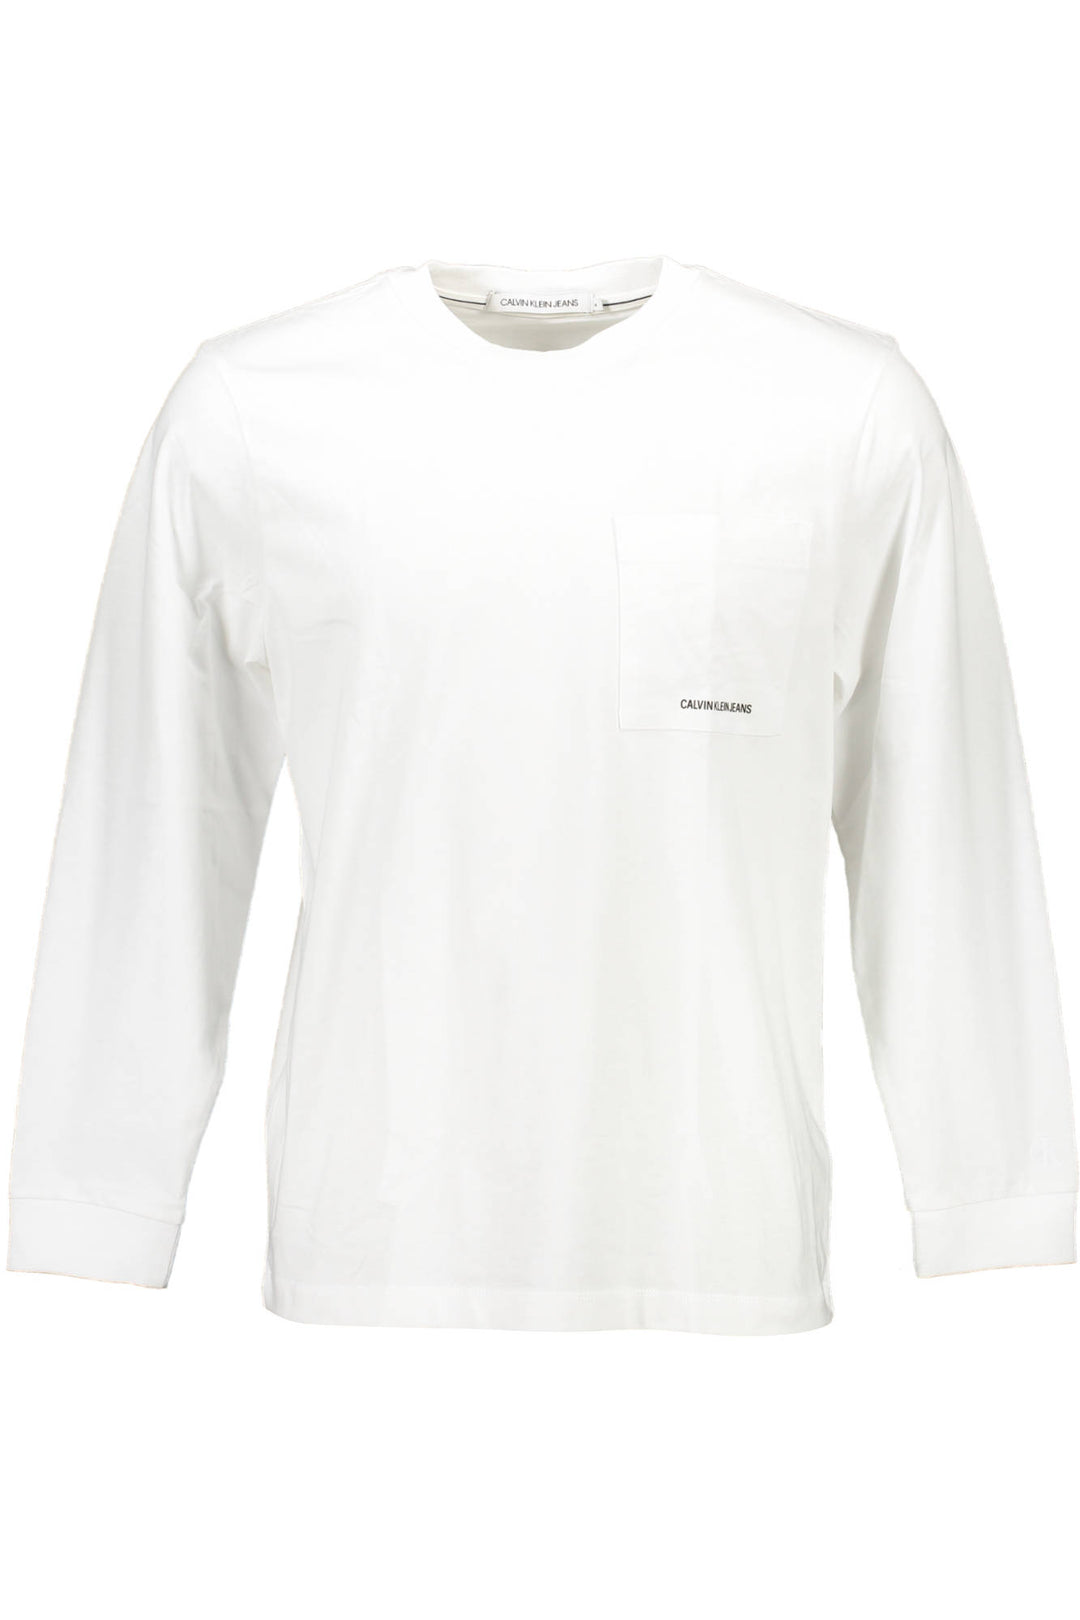 CALVIN KLEIN Herren T-Shirt Shirt Sweatshirt Oberteil mit Rundhalsausschnitt, langärmlig